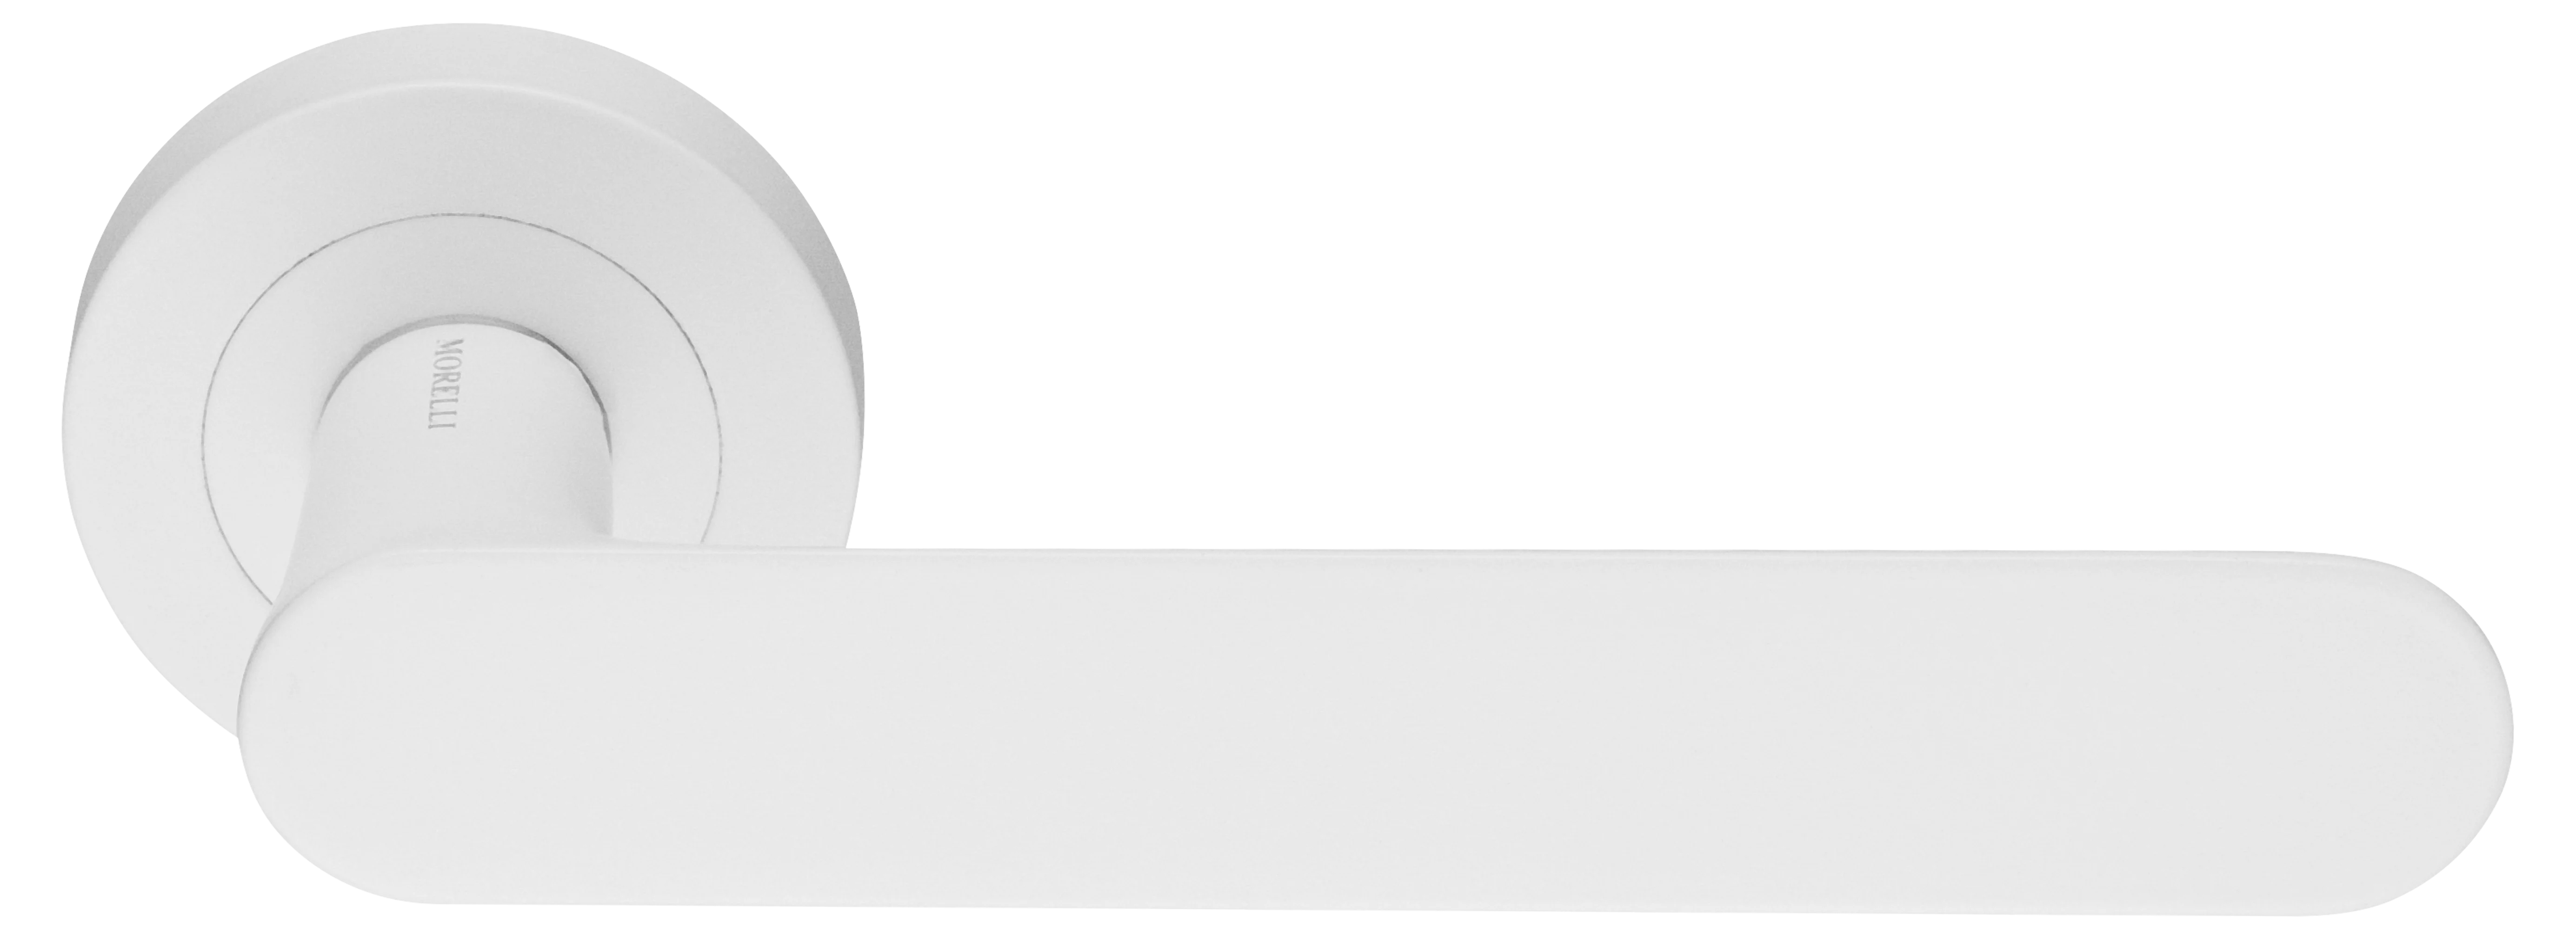 LE BOAT R2 BIA, ручка дверная, цвет - белый фото купить Актобе (Актюбинск)